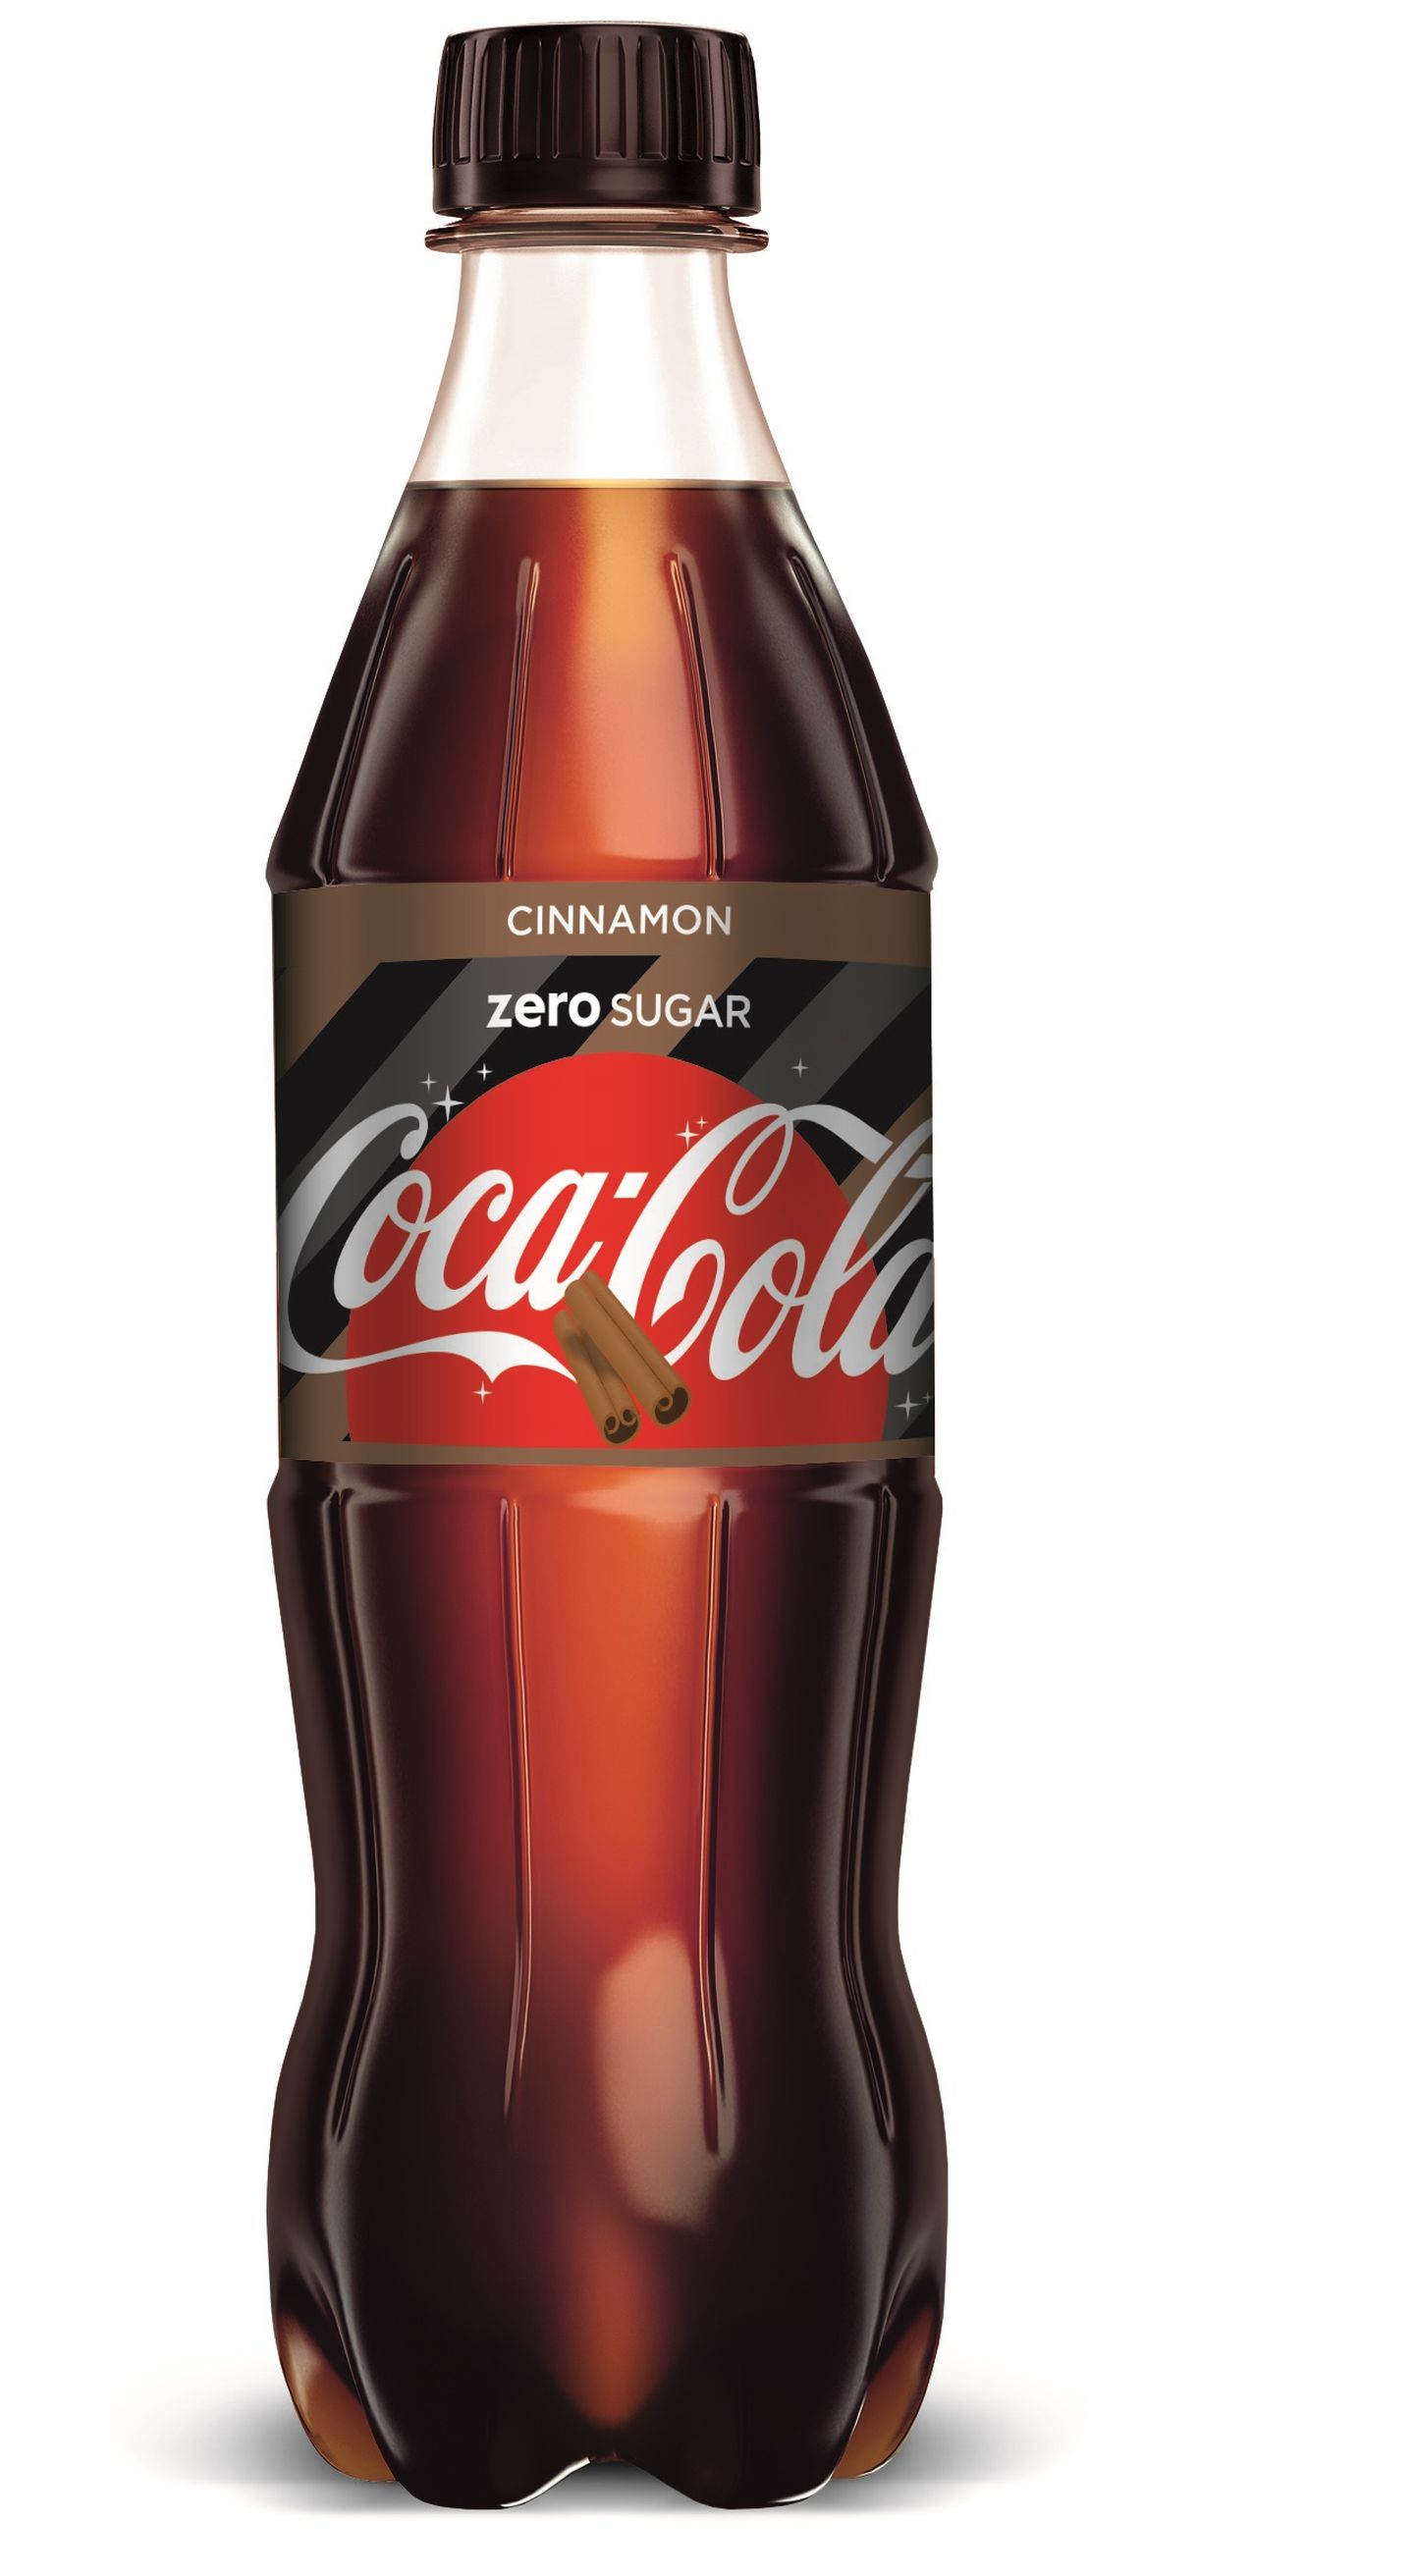 Jõulude eel tuleb uudistootena müügile kaneelimaitseline Coca-Cola Zero.